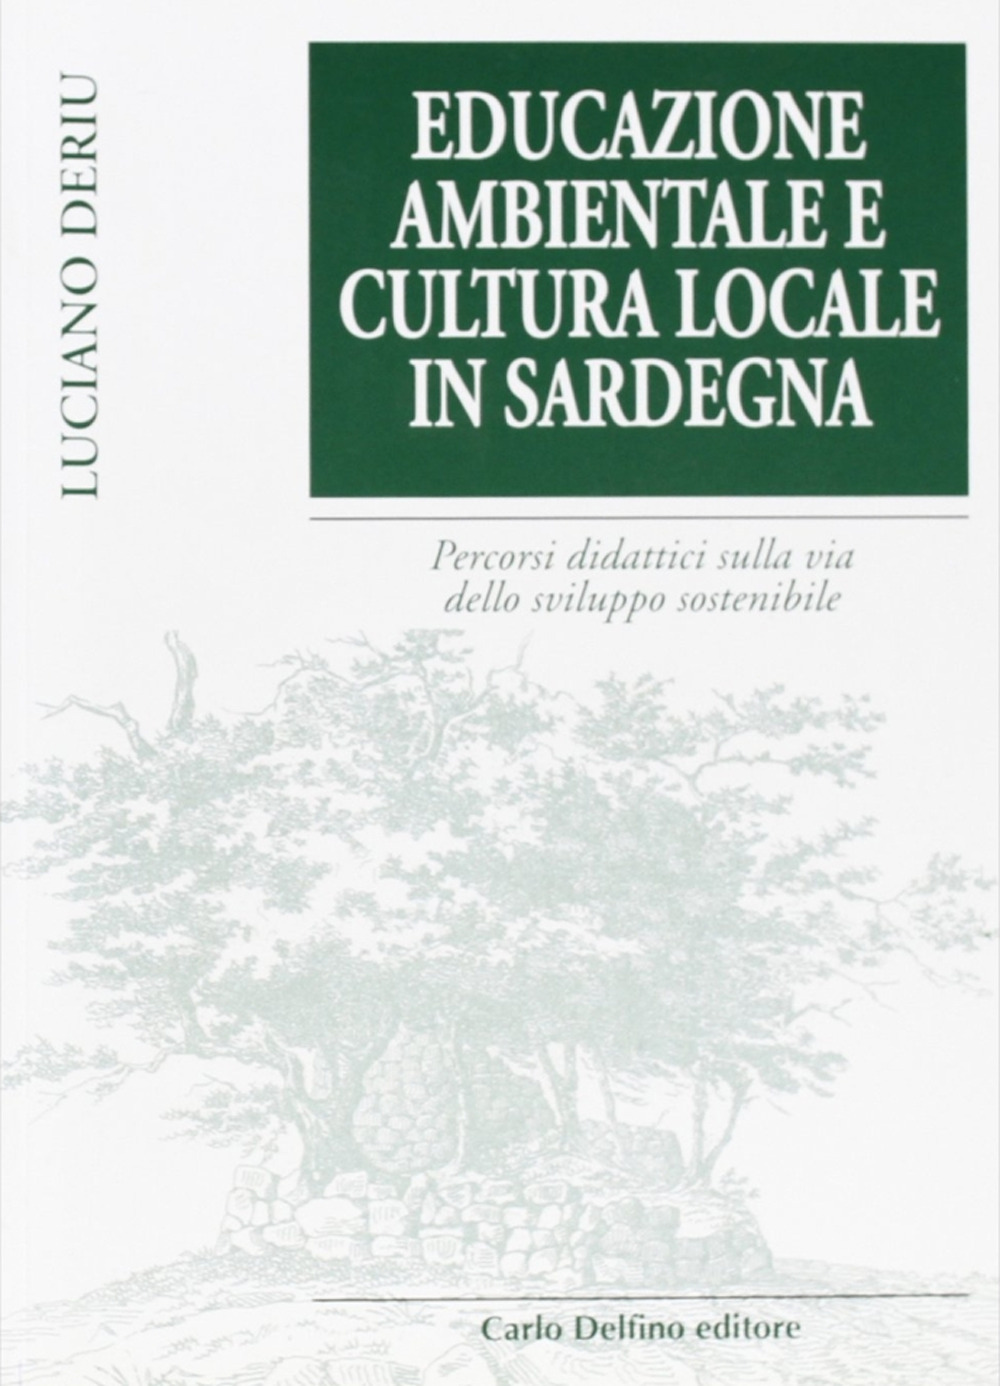 Educazione ambientale e cultura locale della Sardegna